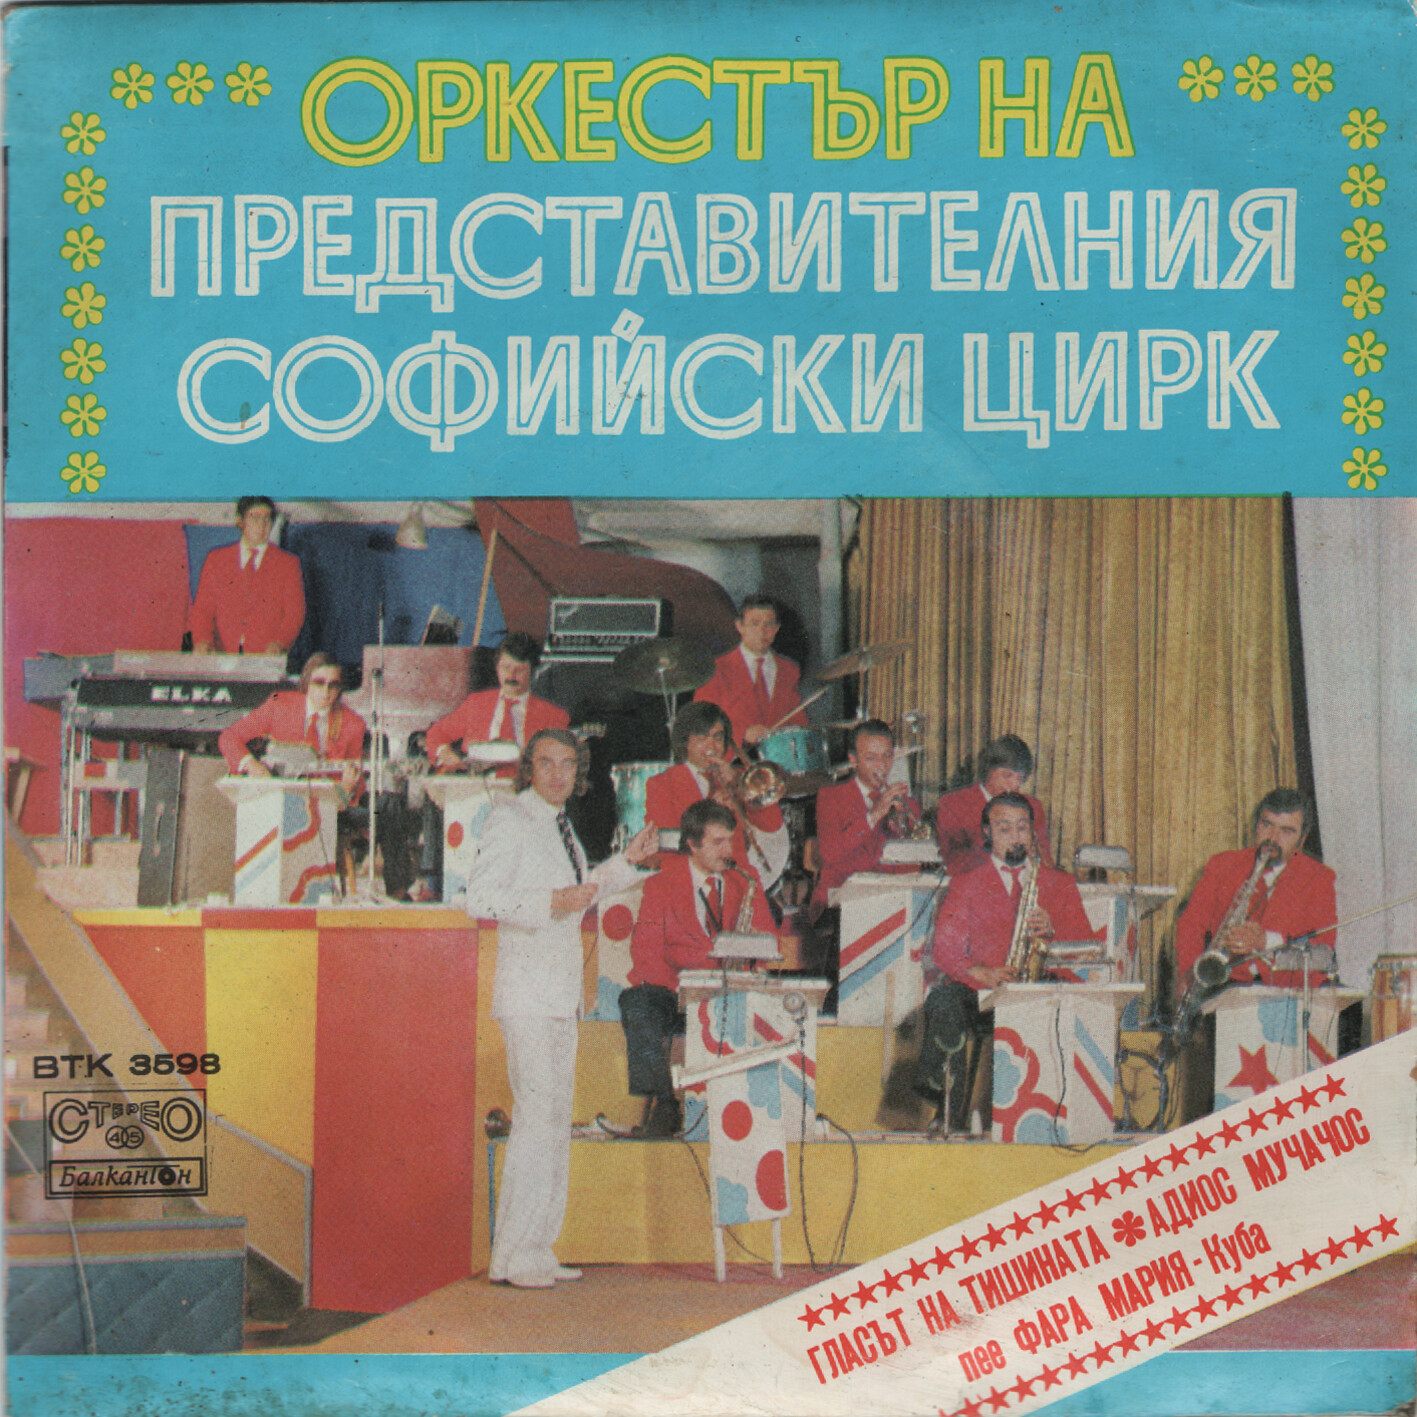 Оркестър на представителния Софийски цирк